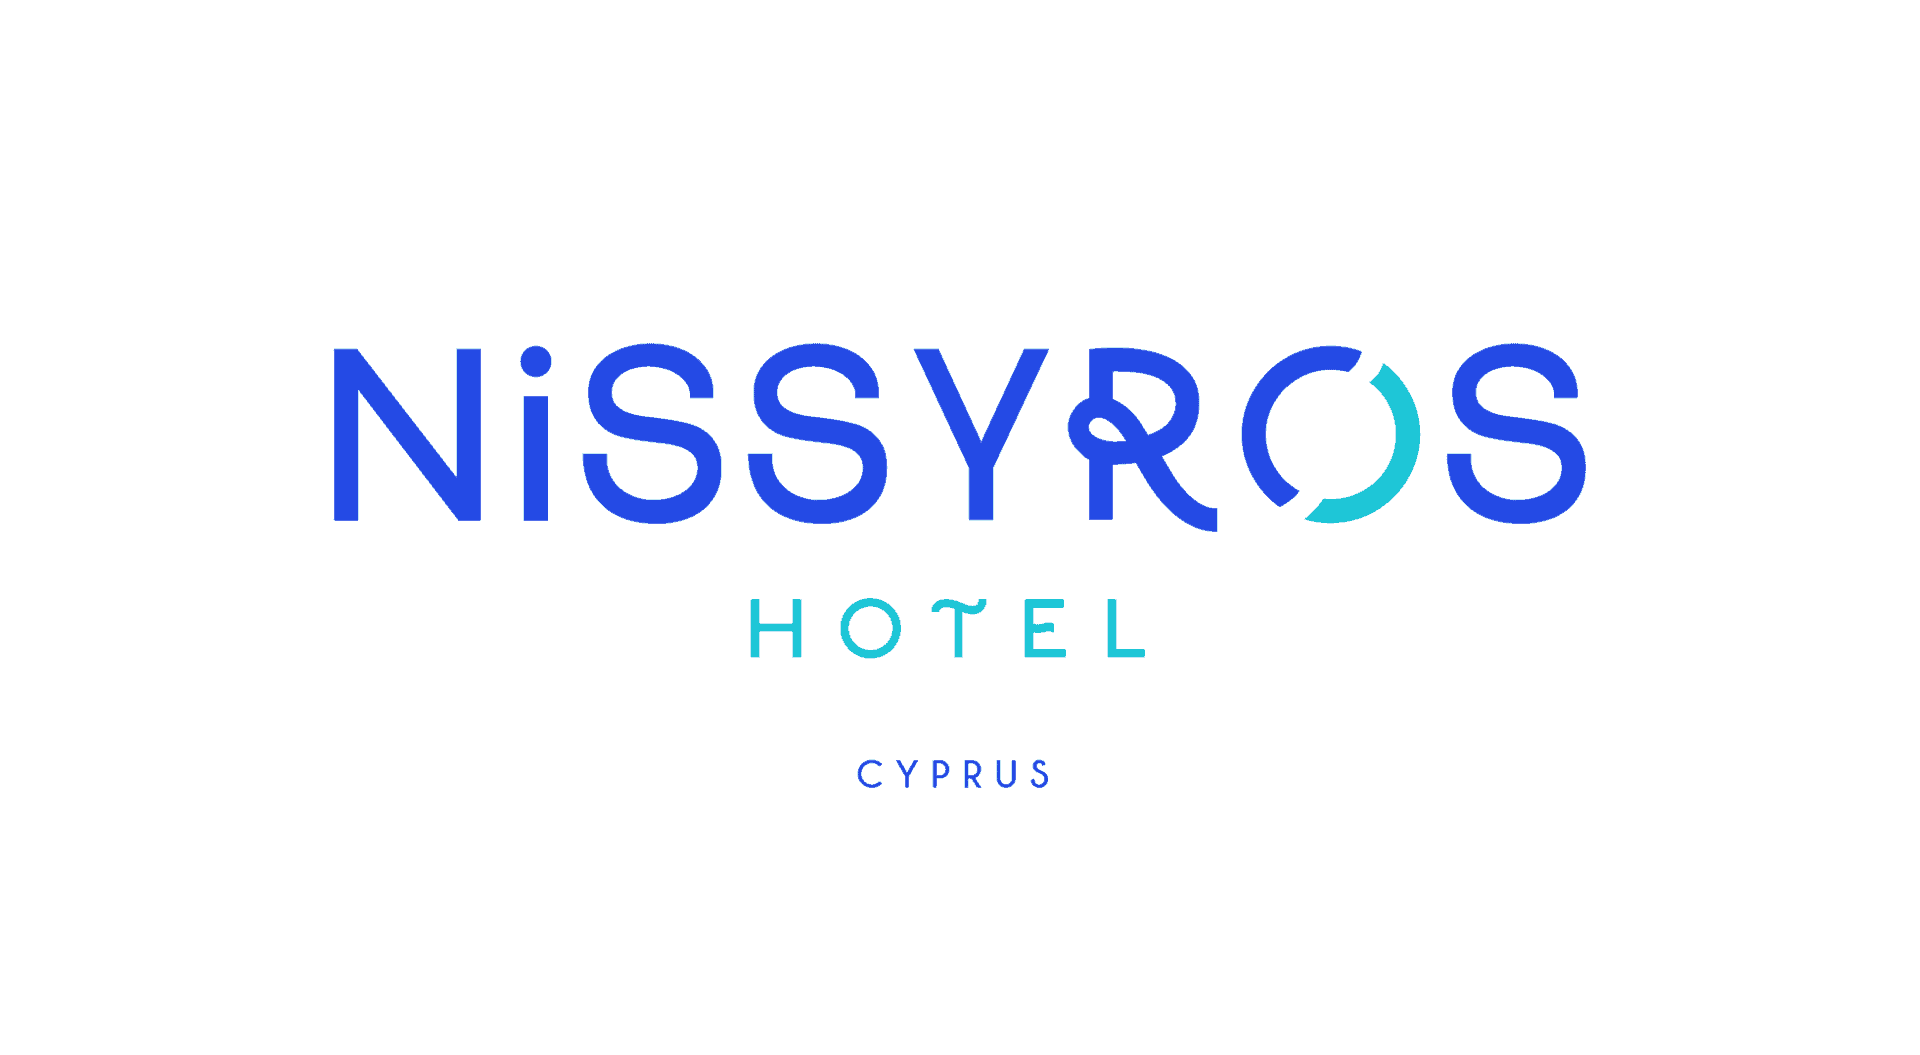 Nissyros hotel